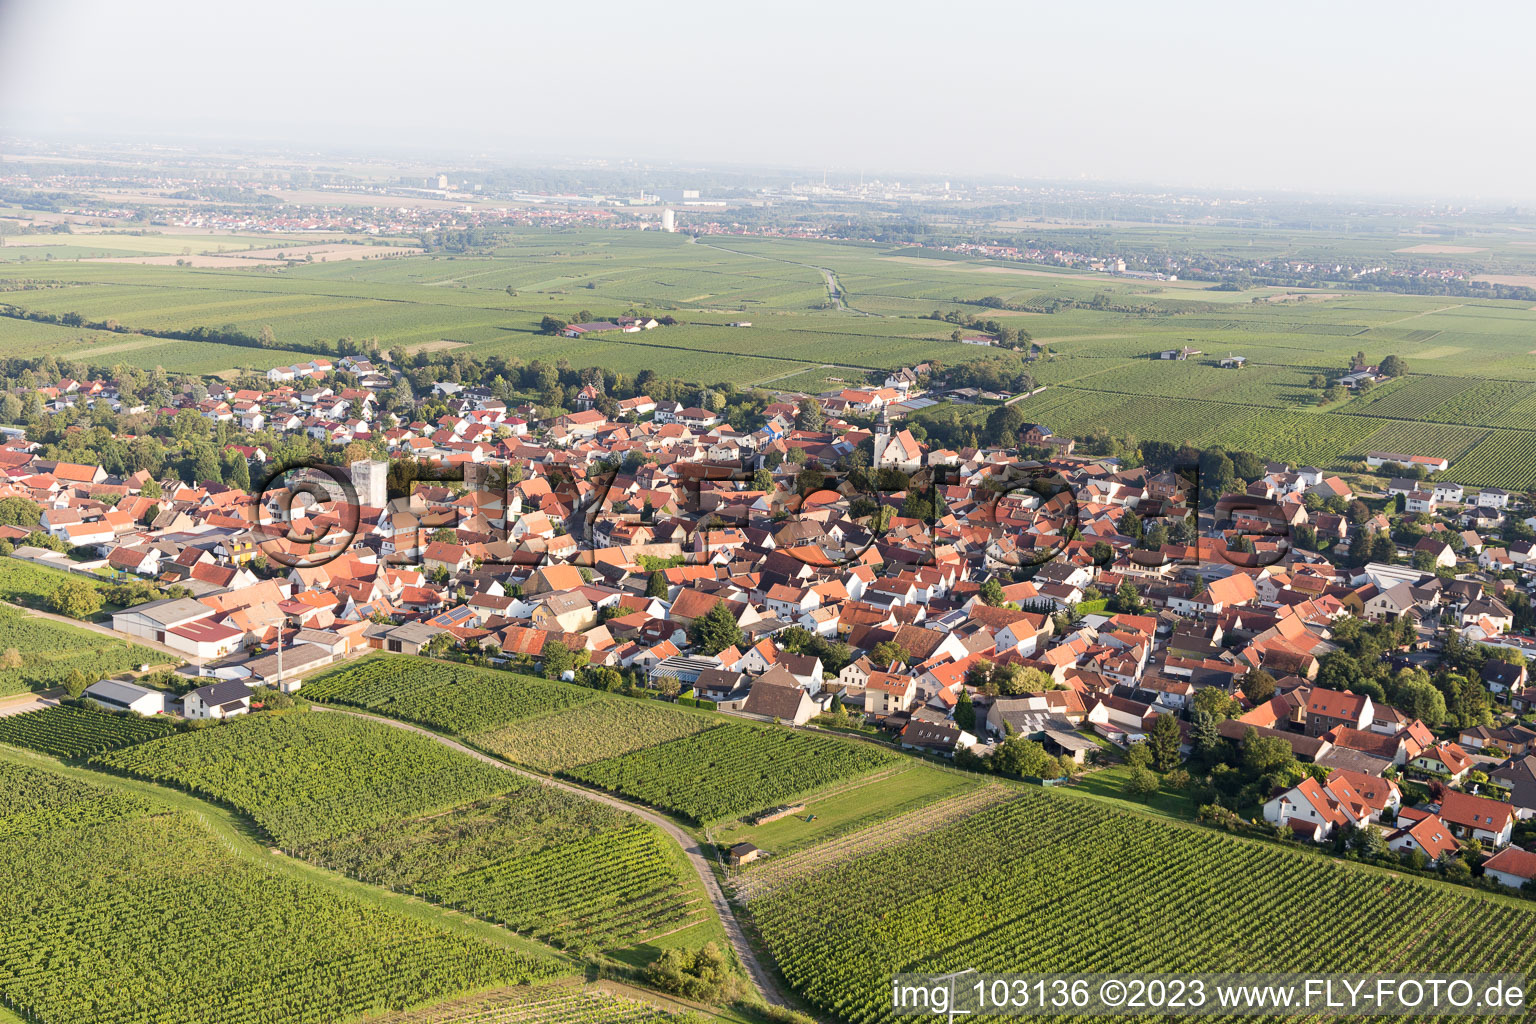 Bechtheim dans le département Rhénanie-Palatinat, Allemagne vue d'en haut